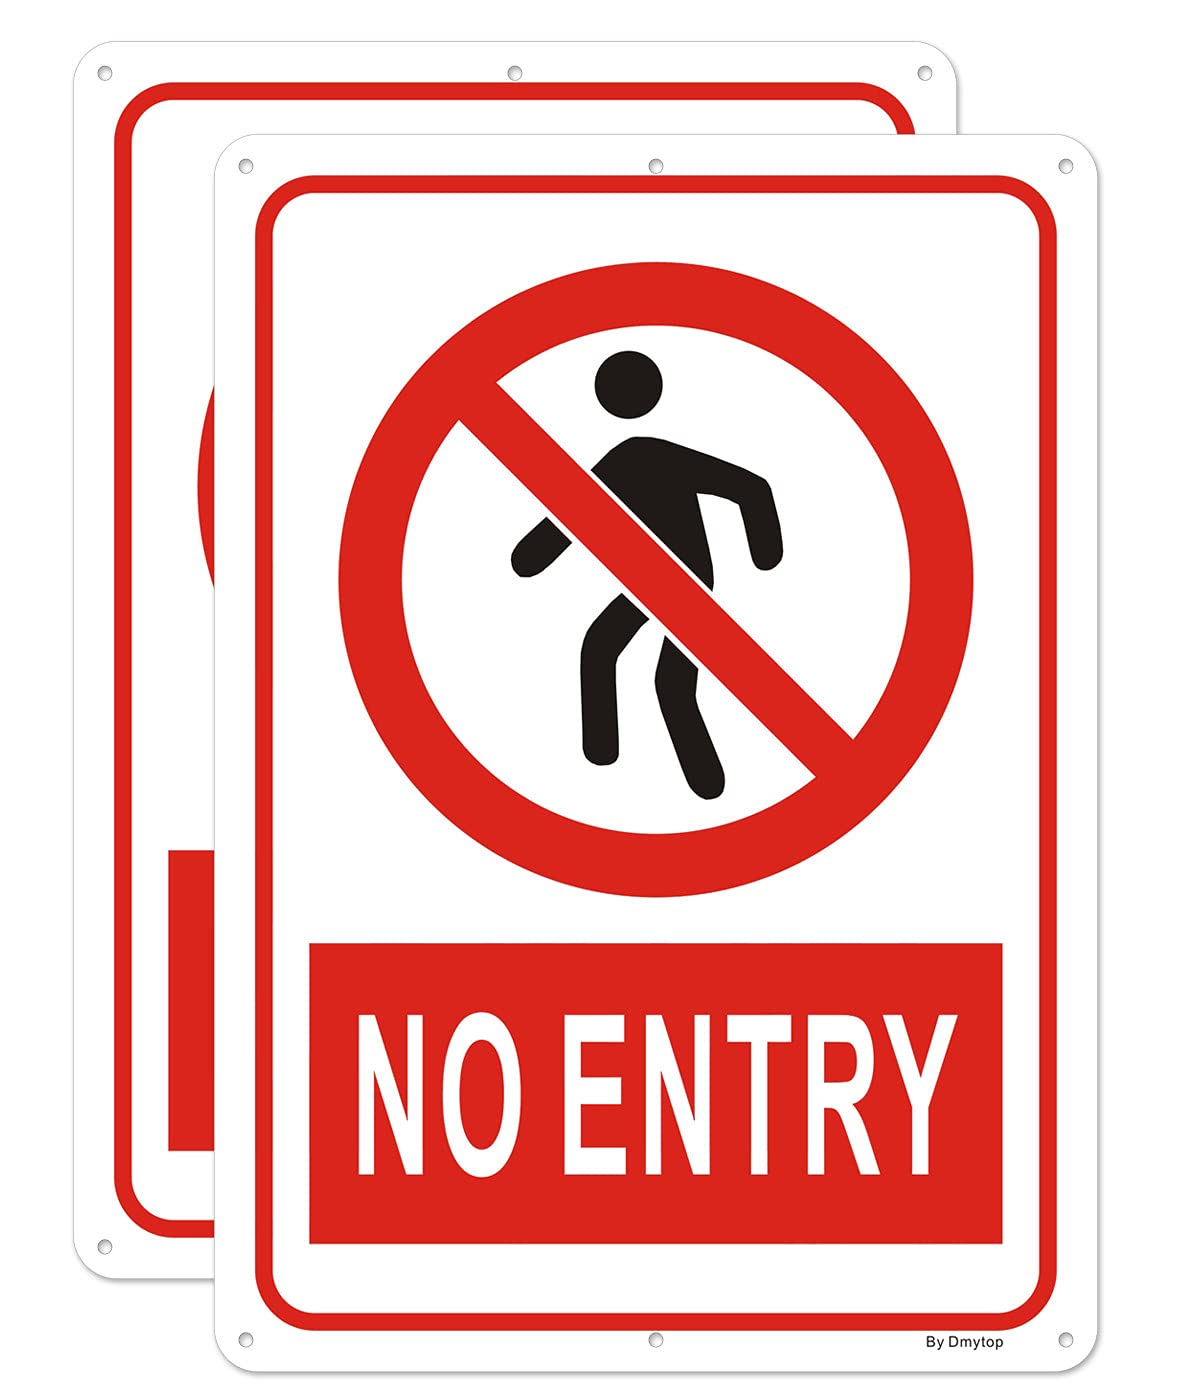 A No Entry sign.